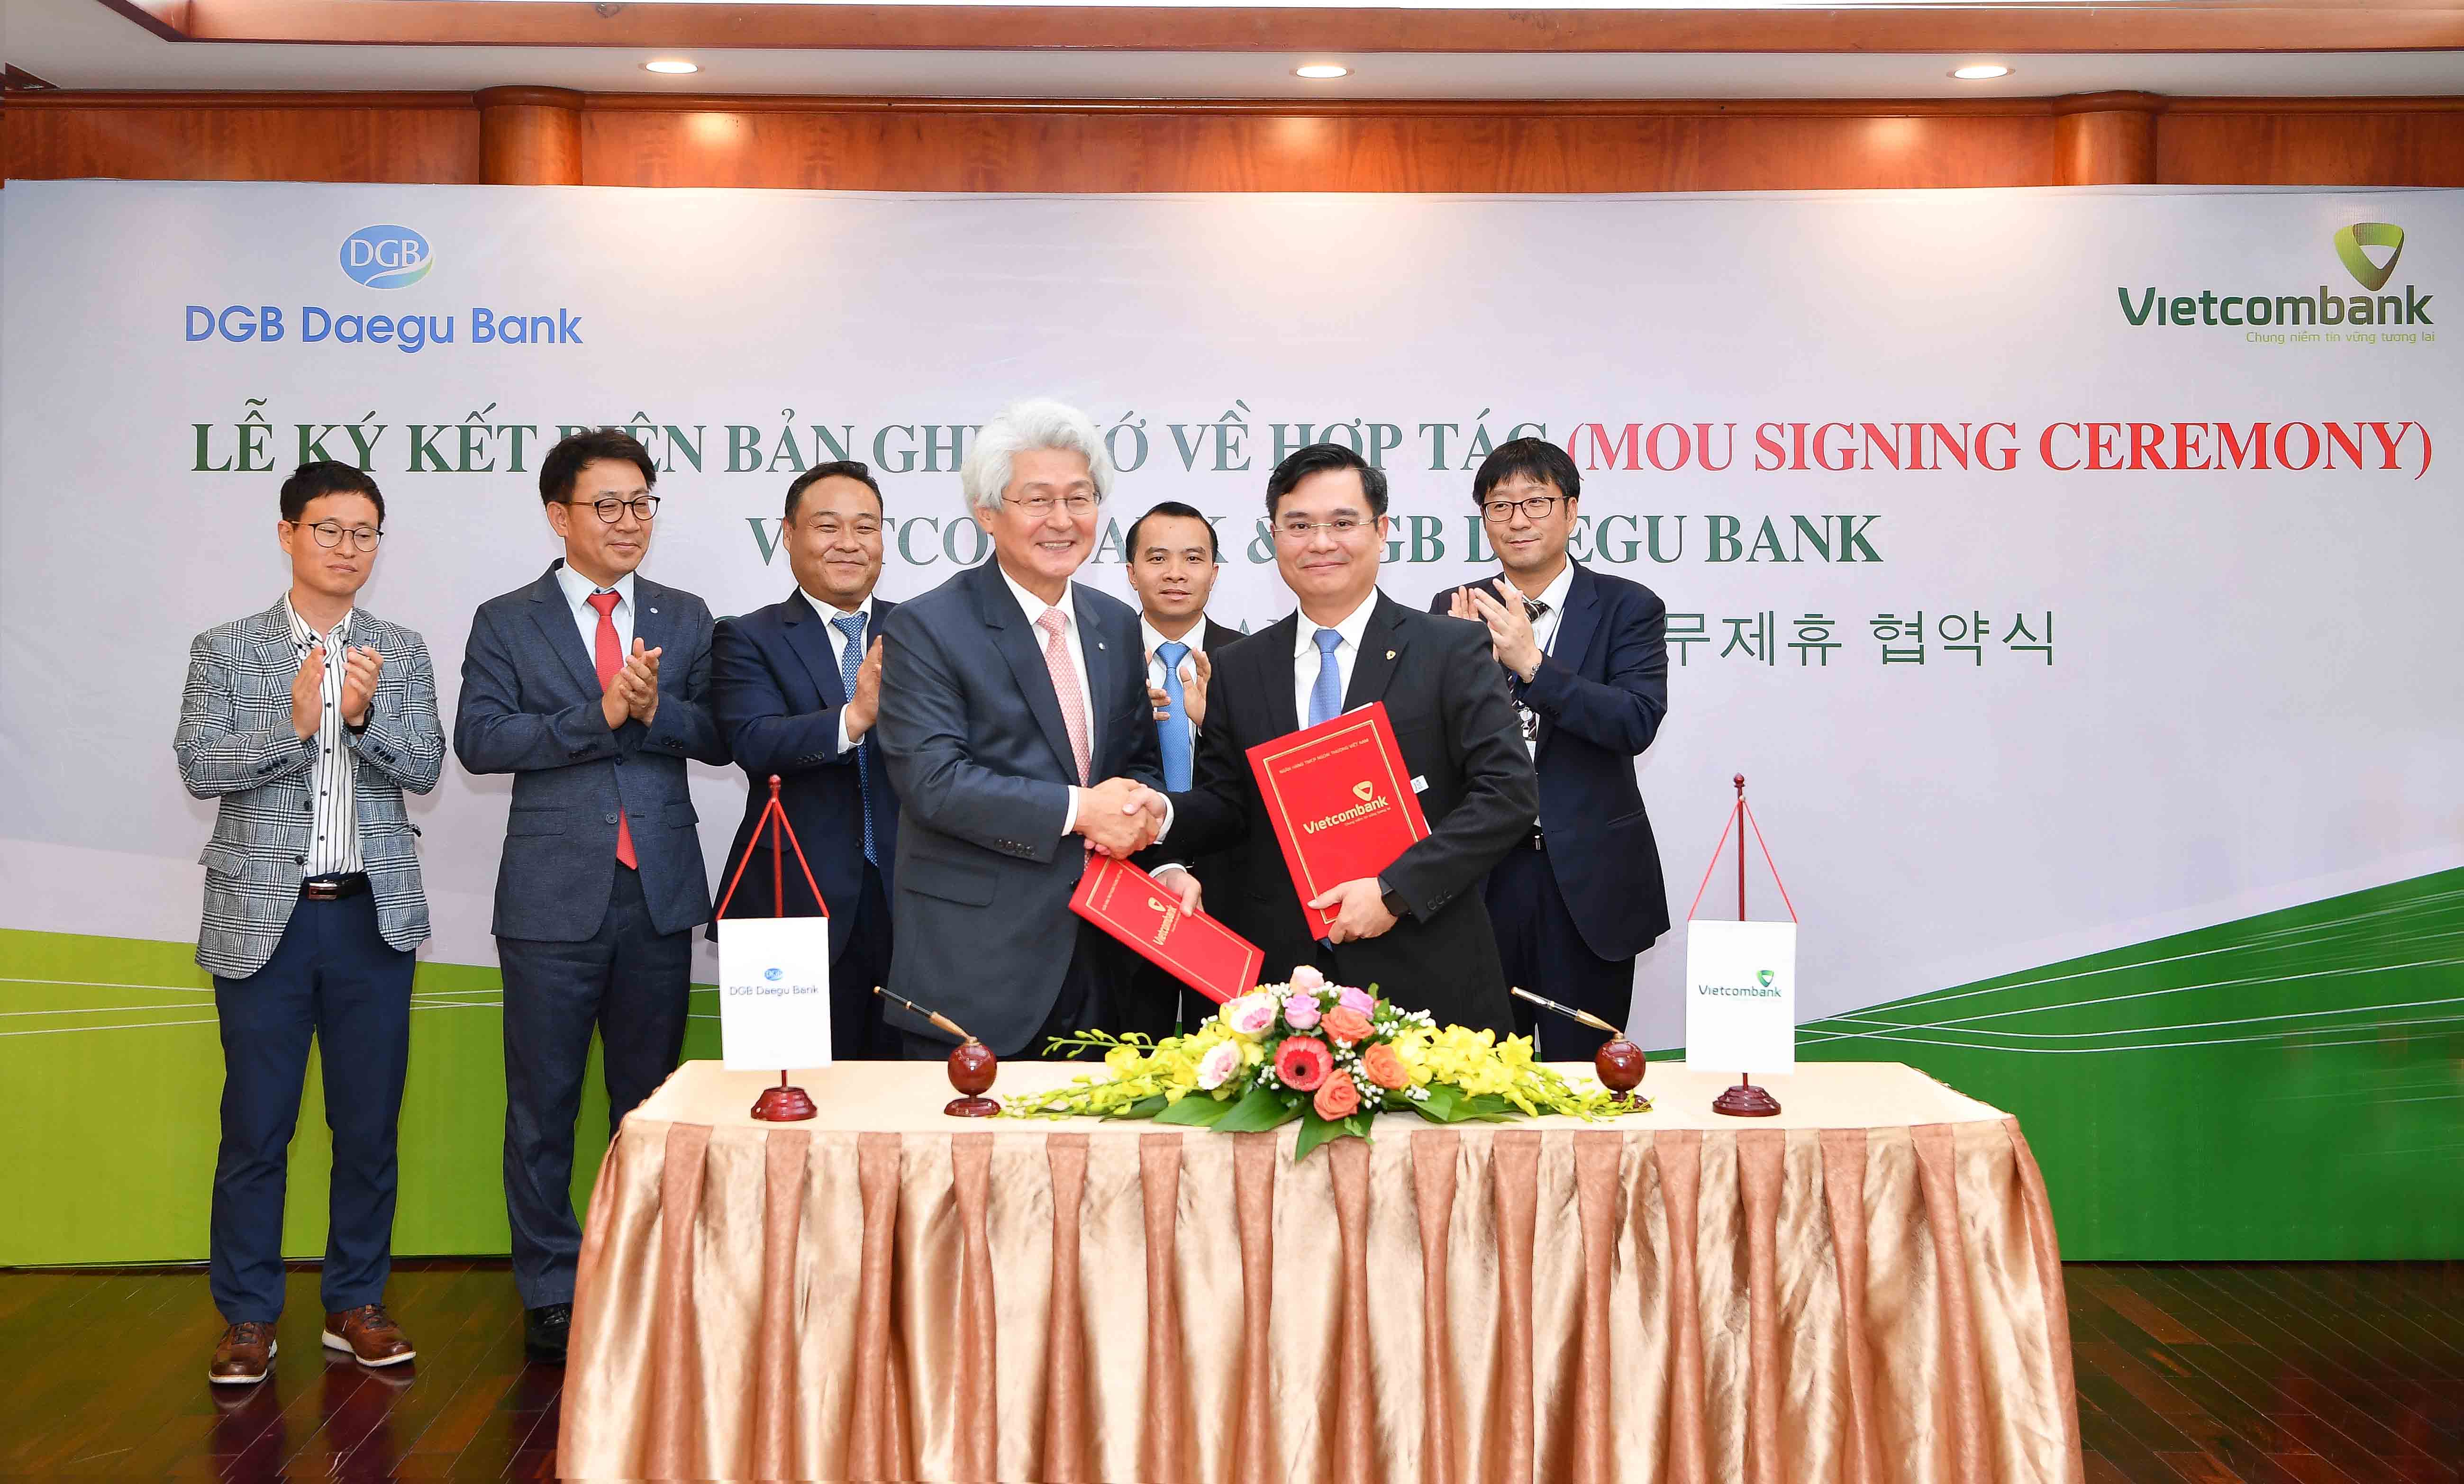  Vietcombank và Ngân hàng DGB Daegu Bank (Hàn Quốc) ký kết Biên bản ghi nhớ về hợp tác